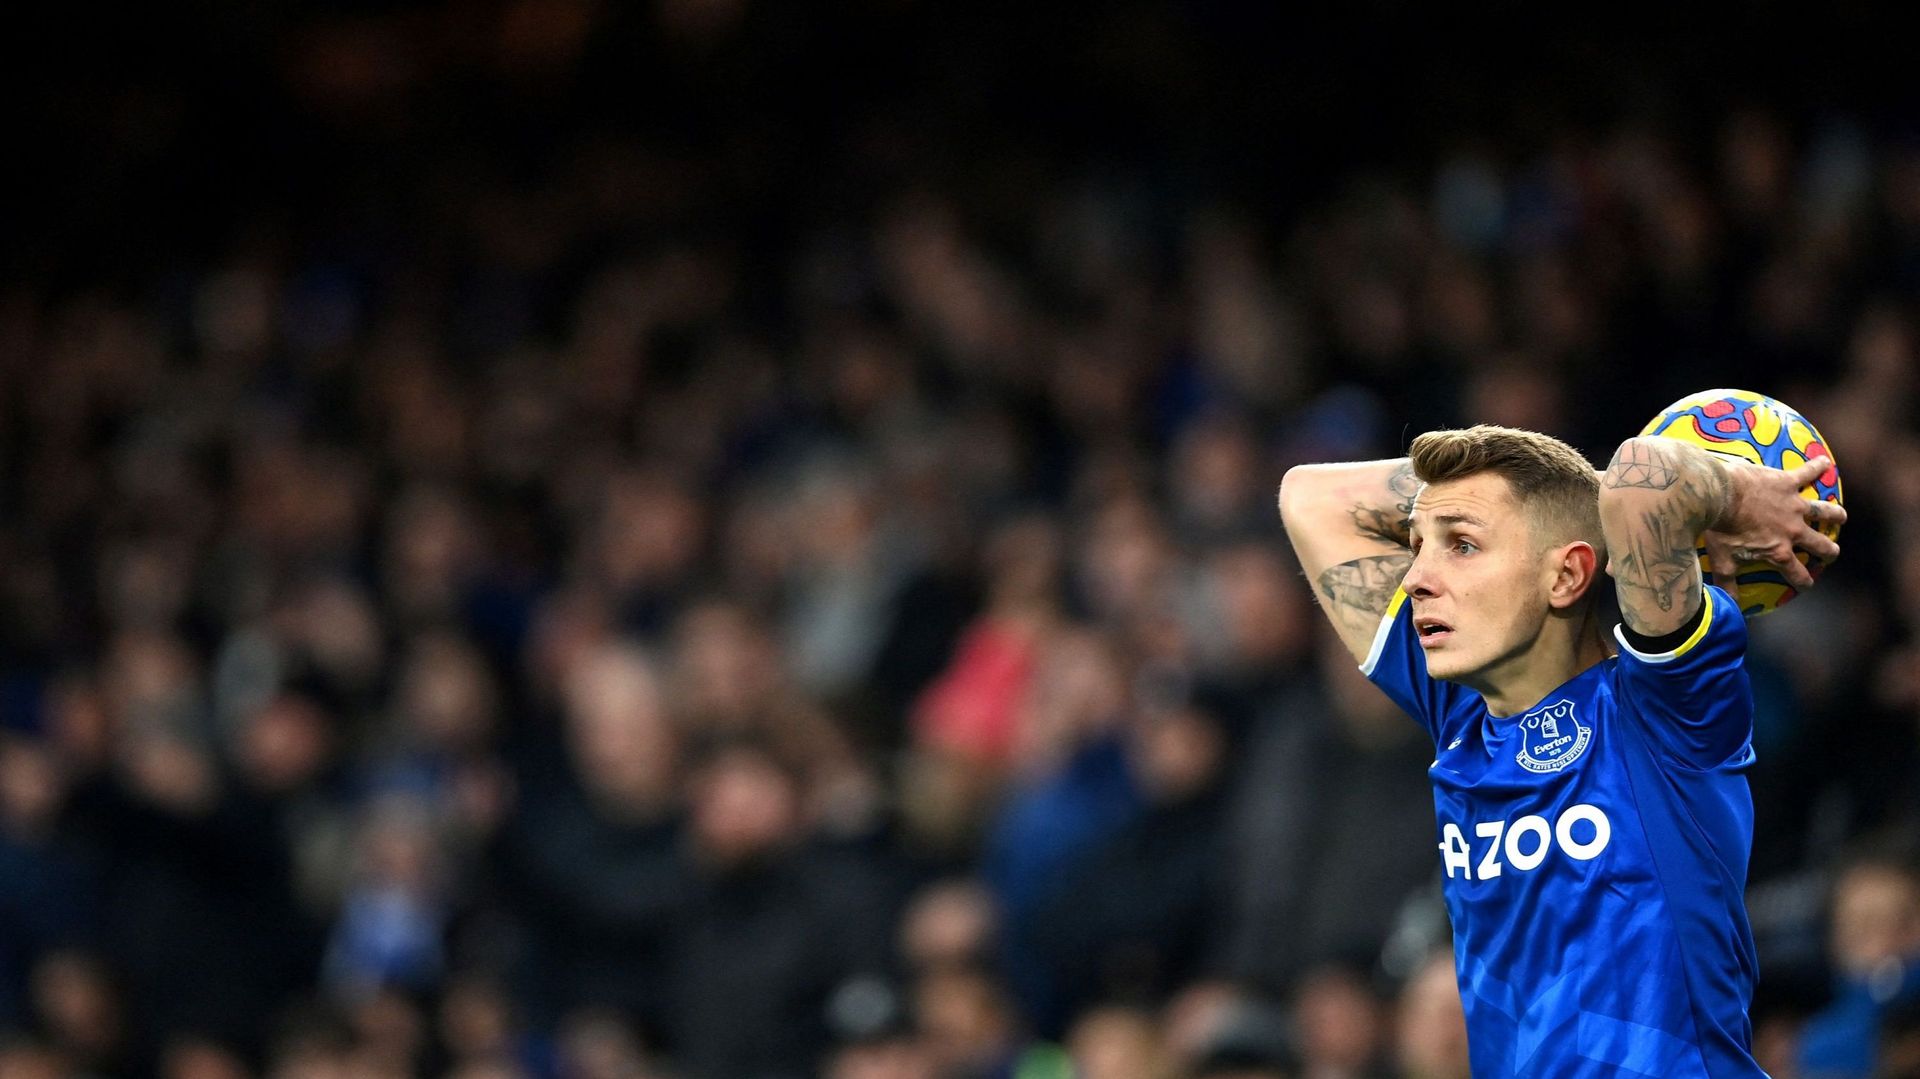 Premier League : Lucas Digne a demandé à quitter Everton, annonce Benitez